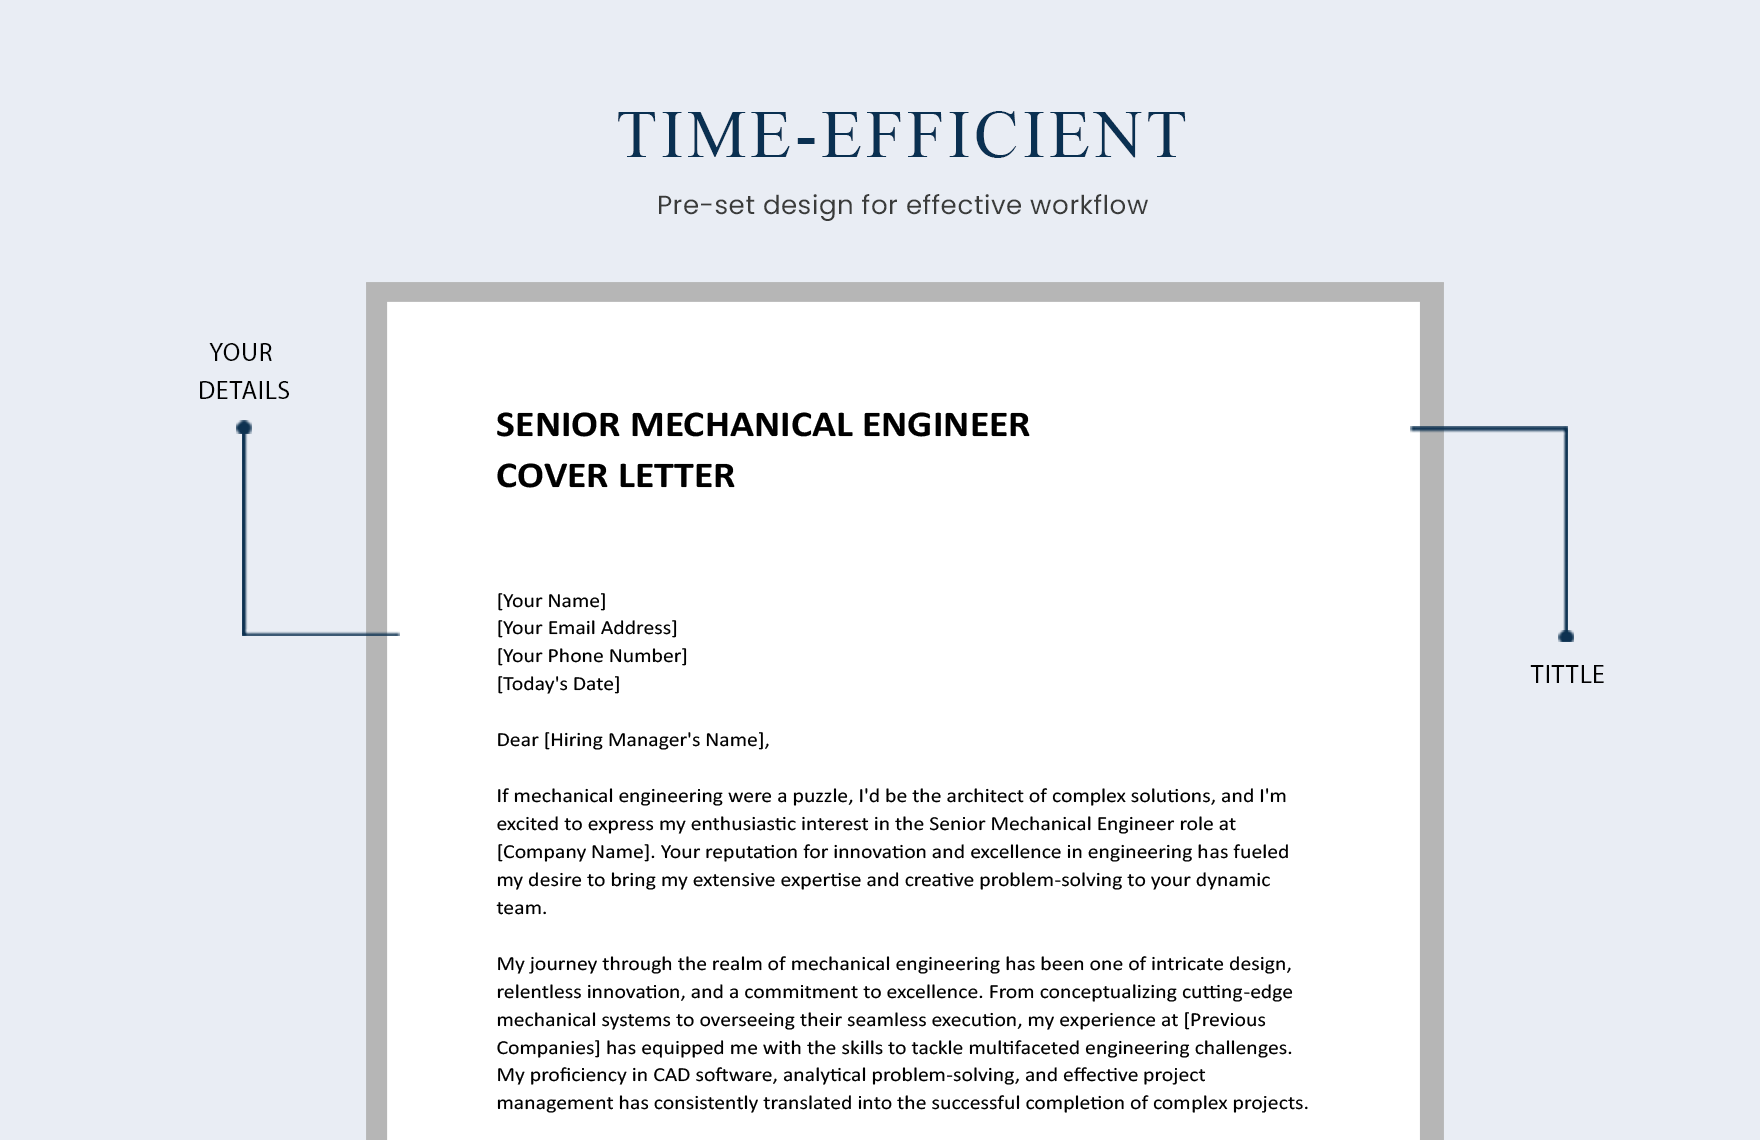 Senior Mechanical Engineer Cover Letter